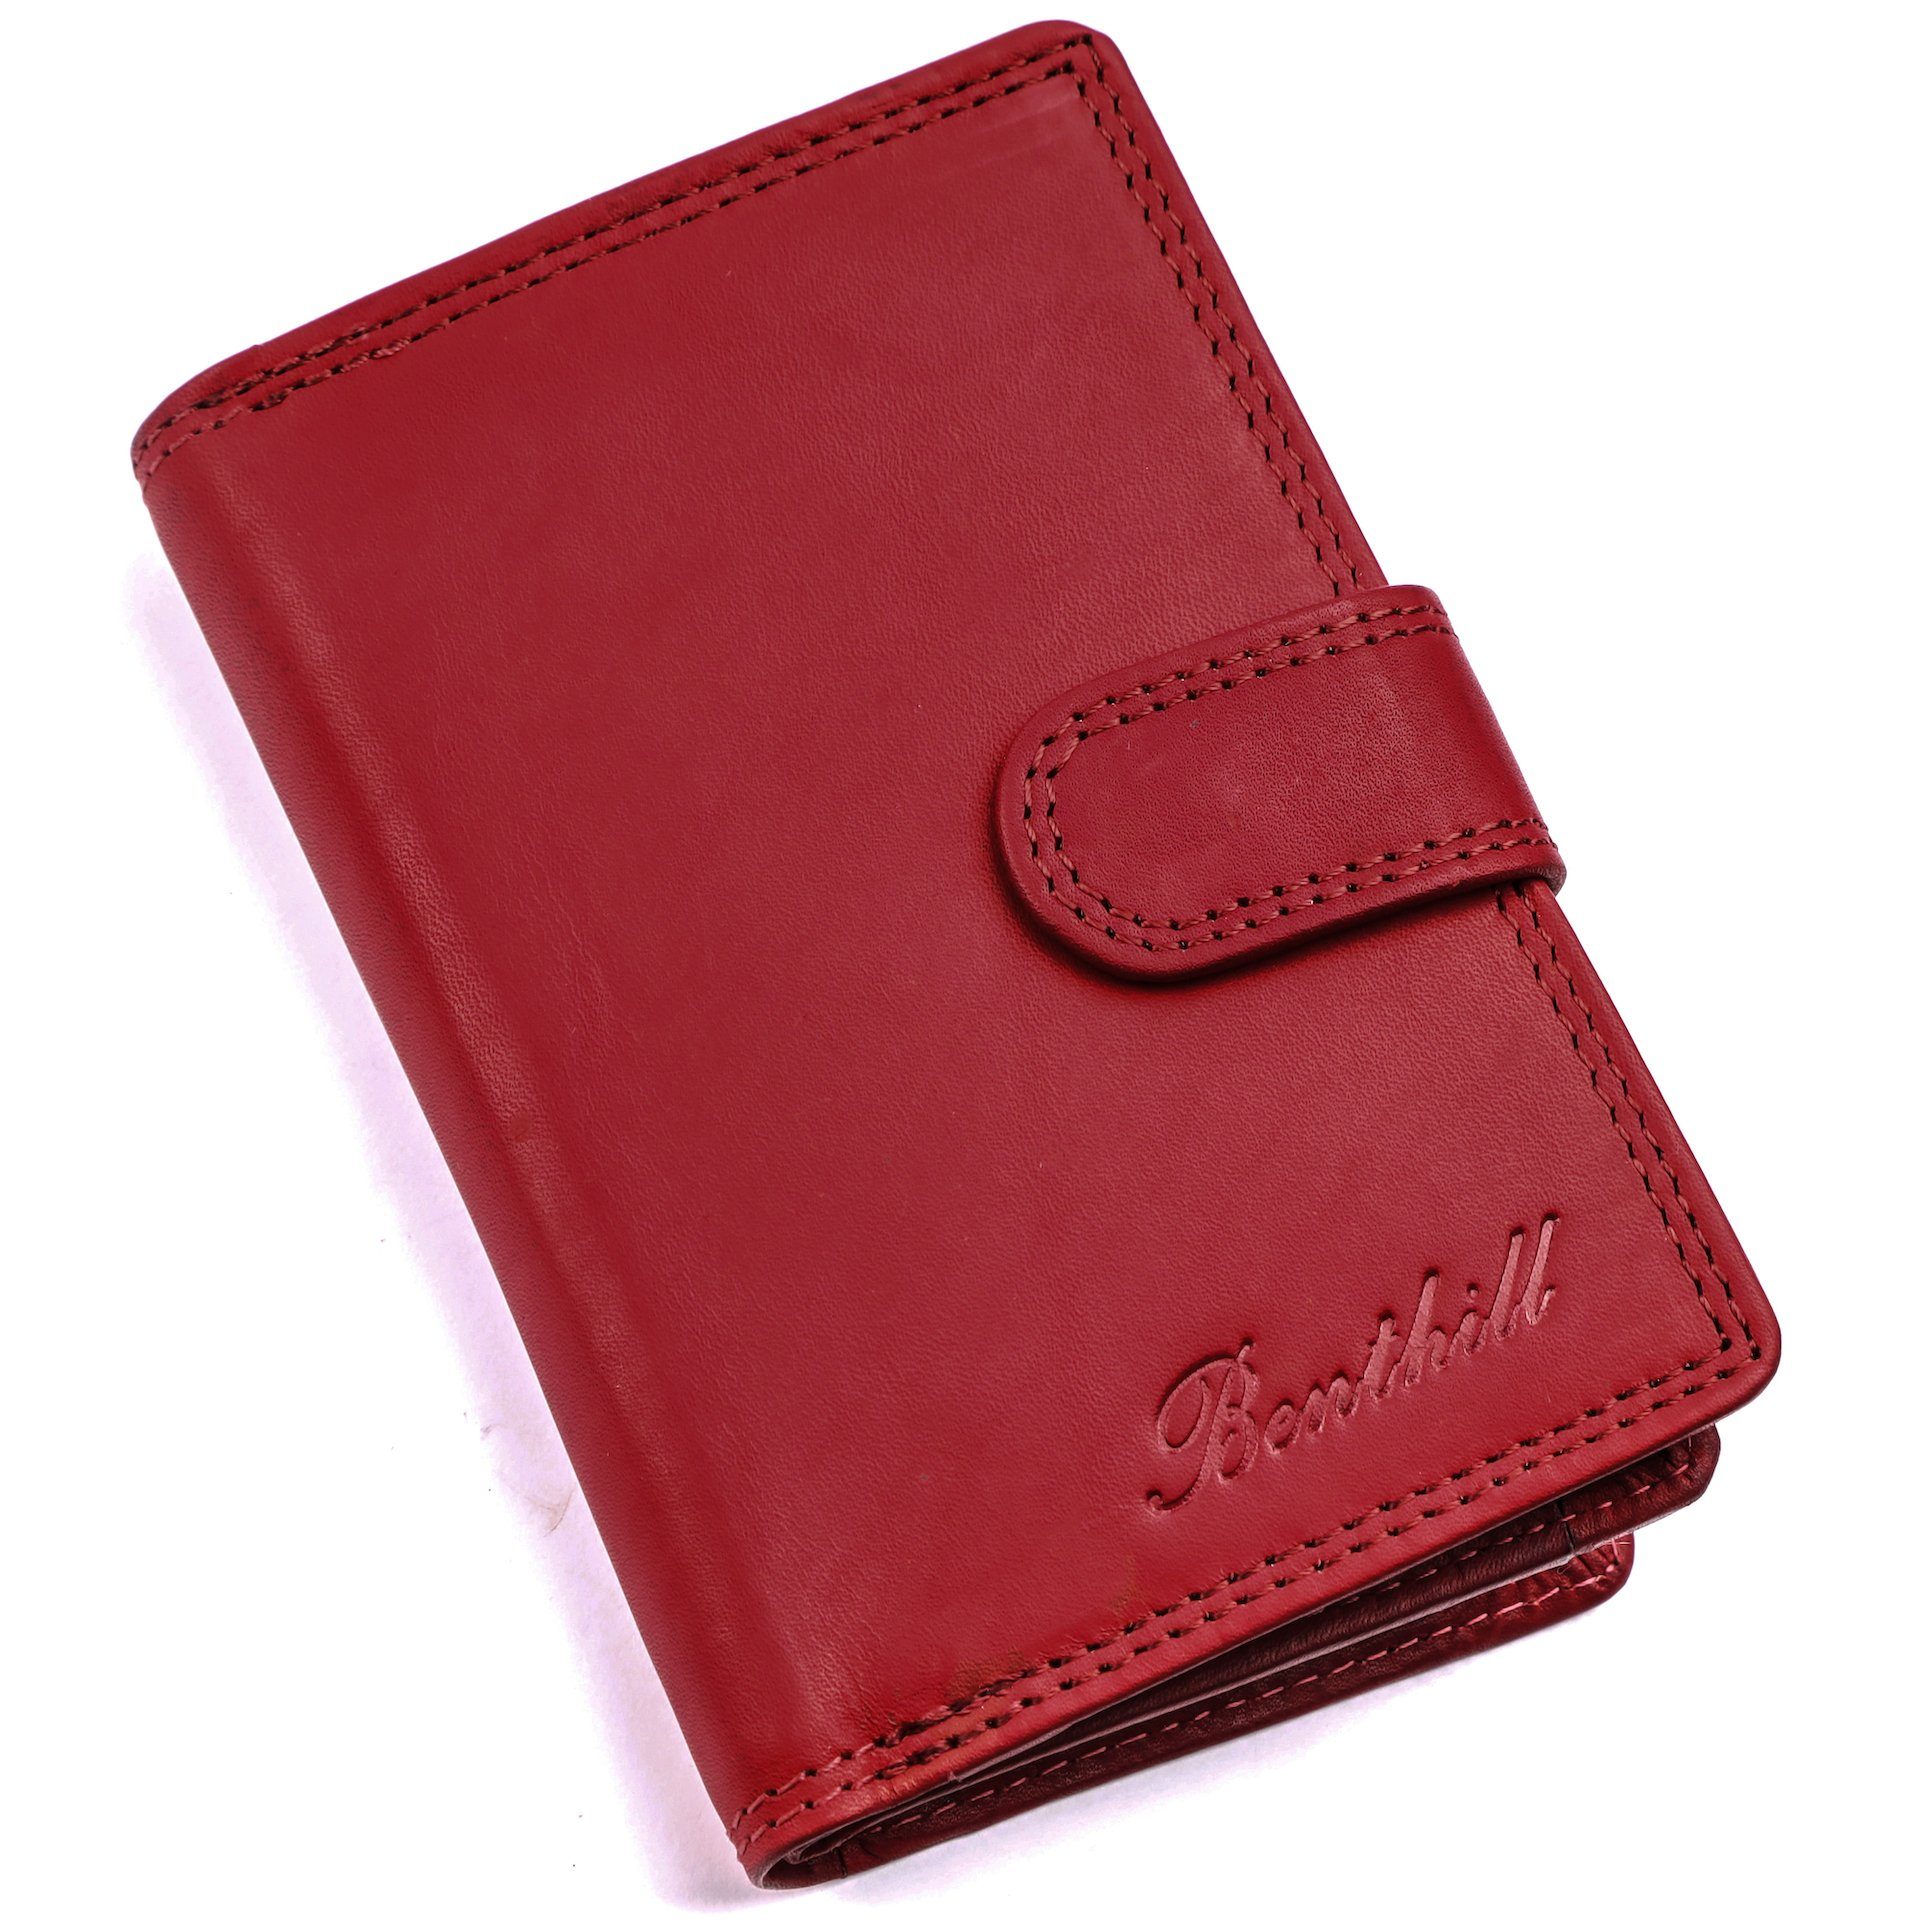 Benthill Geldbörse Damen Klein Echt RFID Kartenfächer Kompakt, Portemonnaie RFID-Schutz Kleines Leder Münzfach Vintage Rot Reißverschlussfach